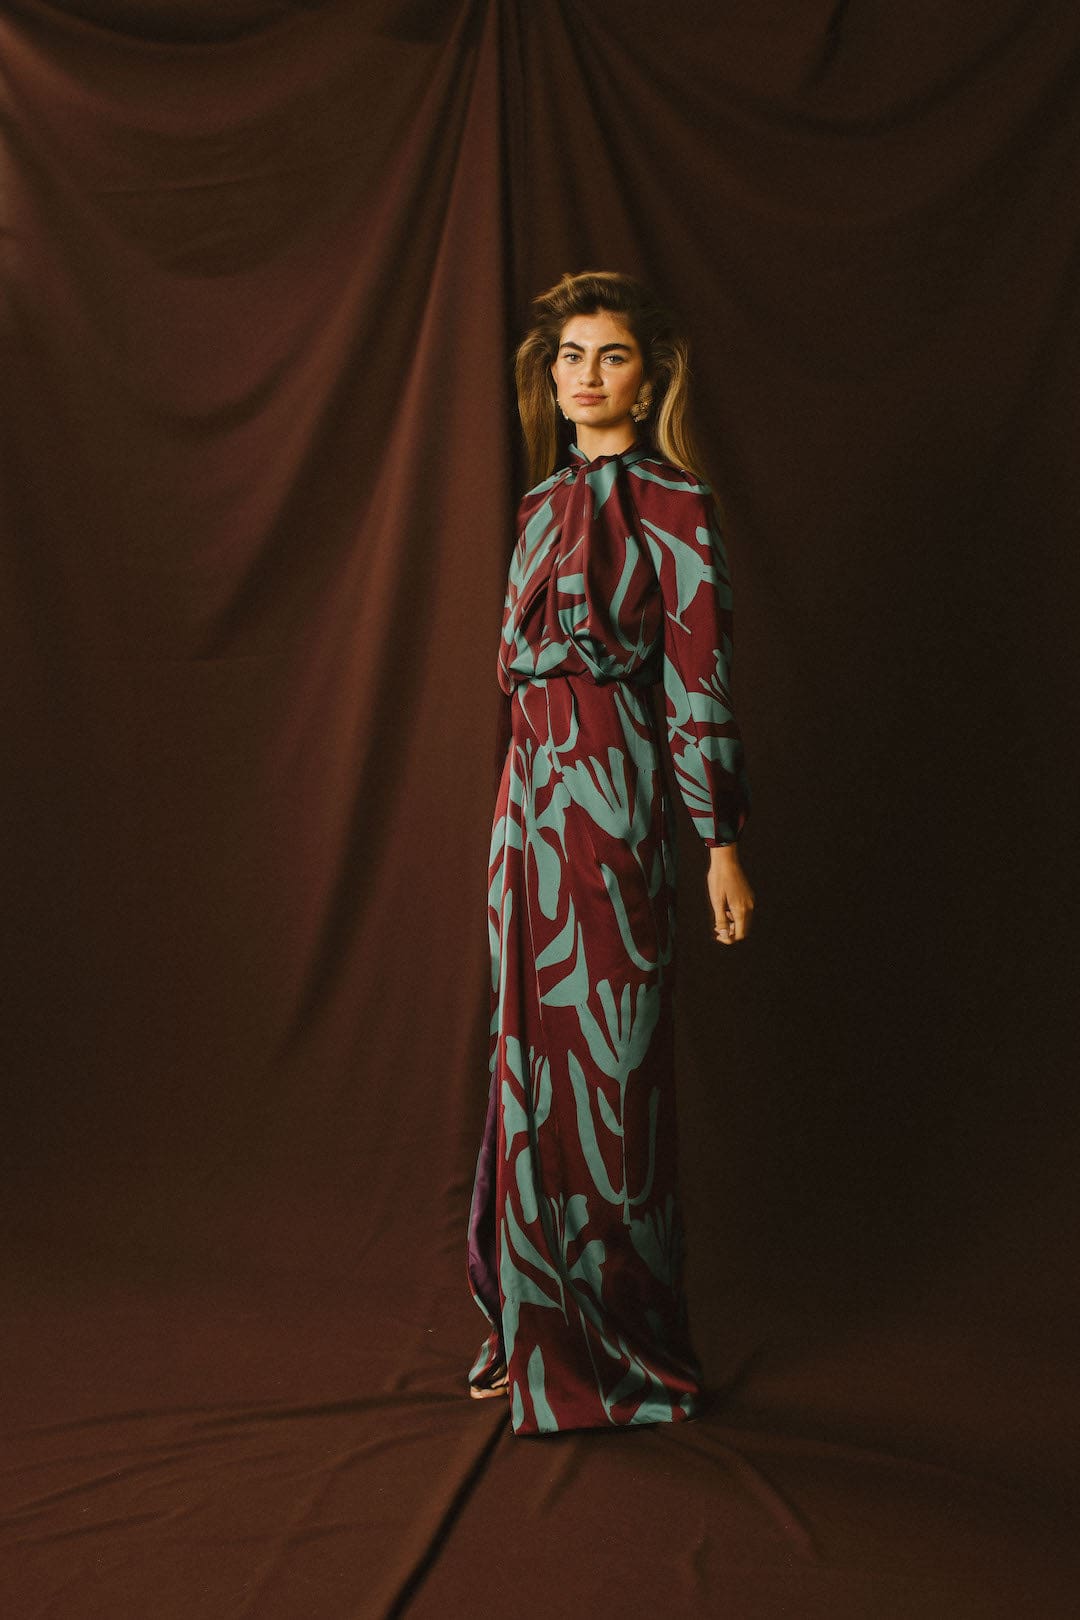 Vestido de Invitada MILA de Redondo Brand, con estampado en color turquesa y granate, ideal para bodas de otoño.